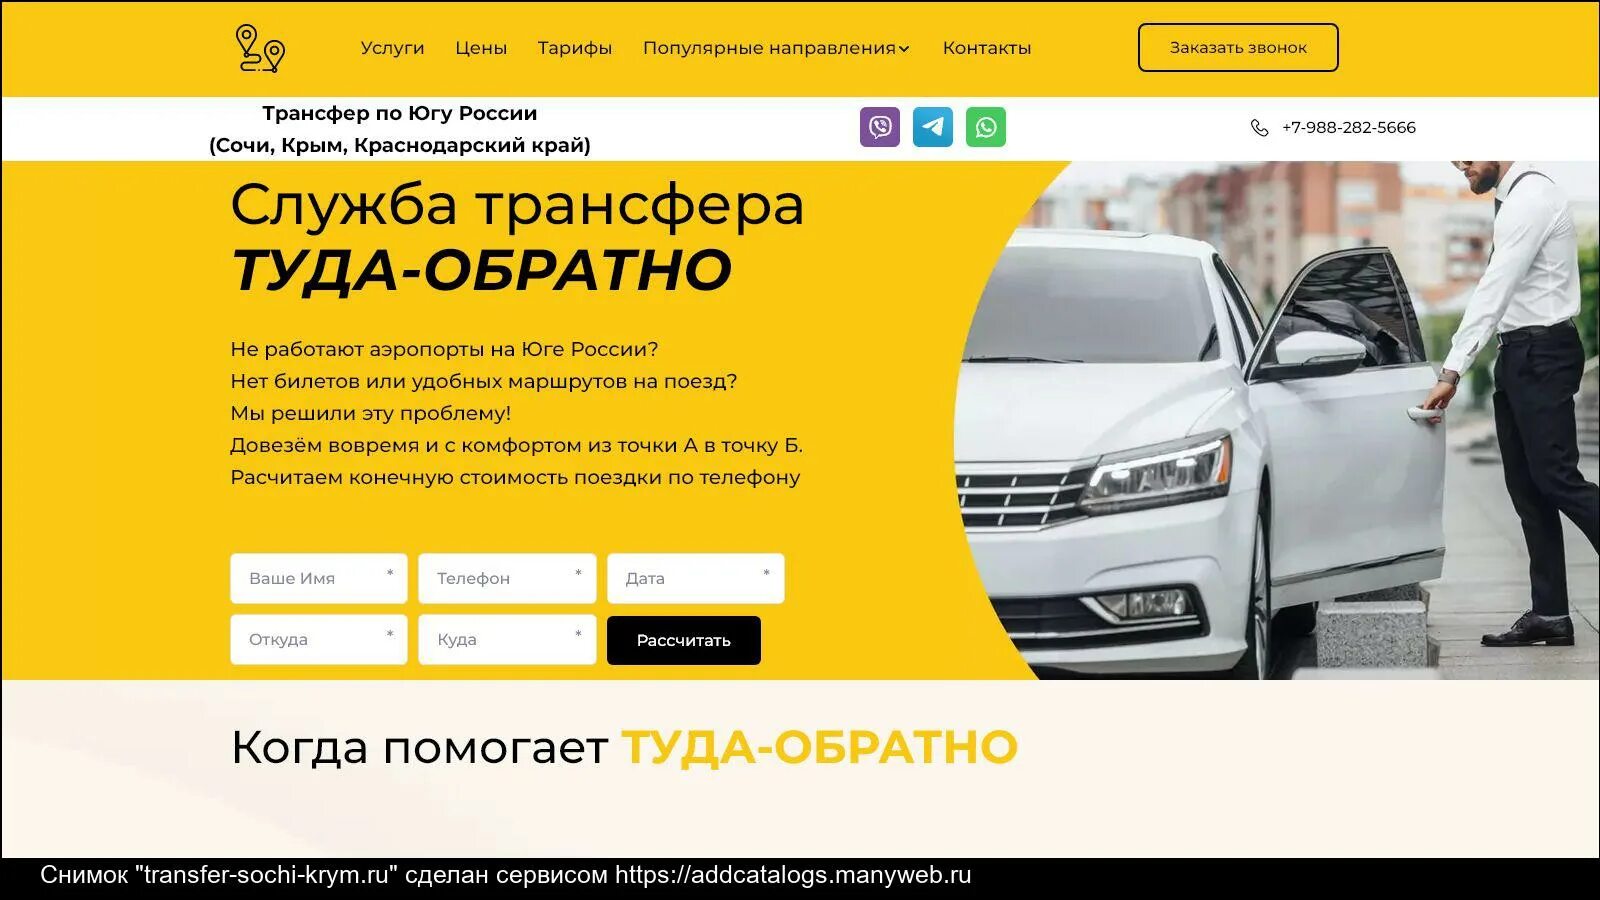 Заказать такси сочи по телефону. Такси из Сочи в Крым. Такси. Золотое такси Сочи. Такси межгород.